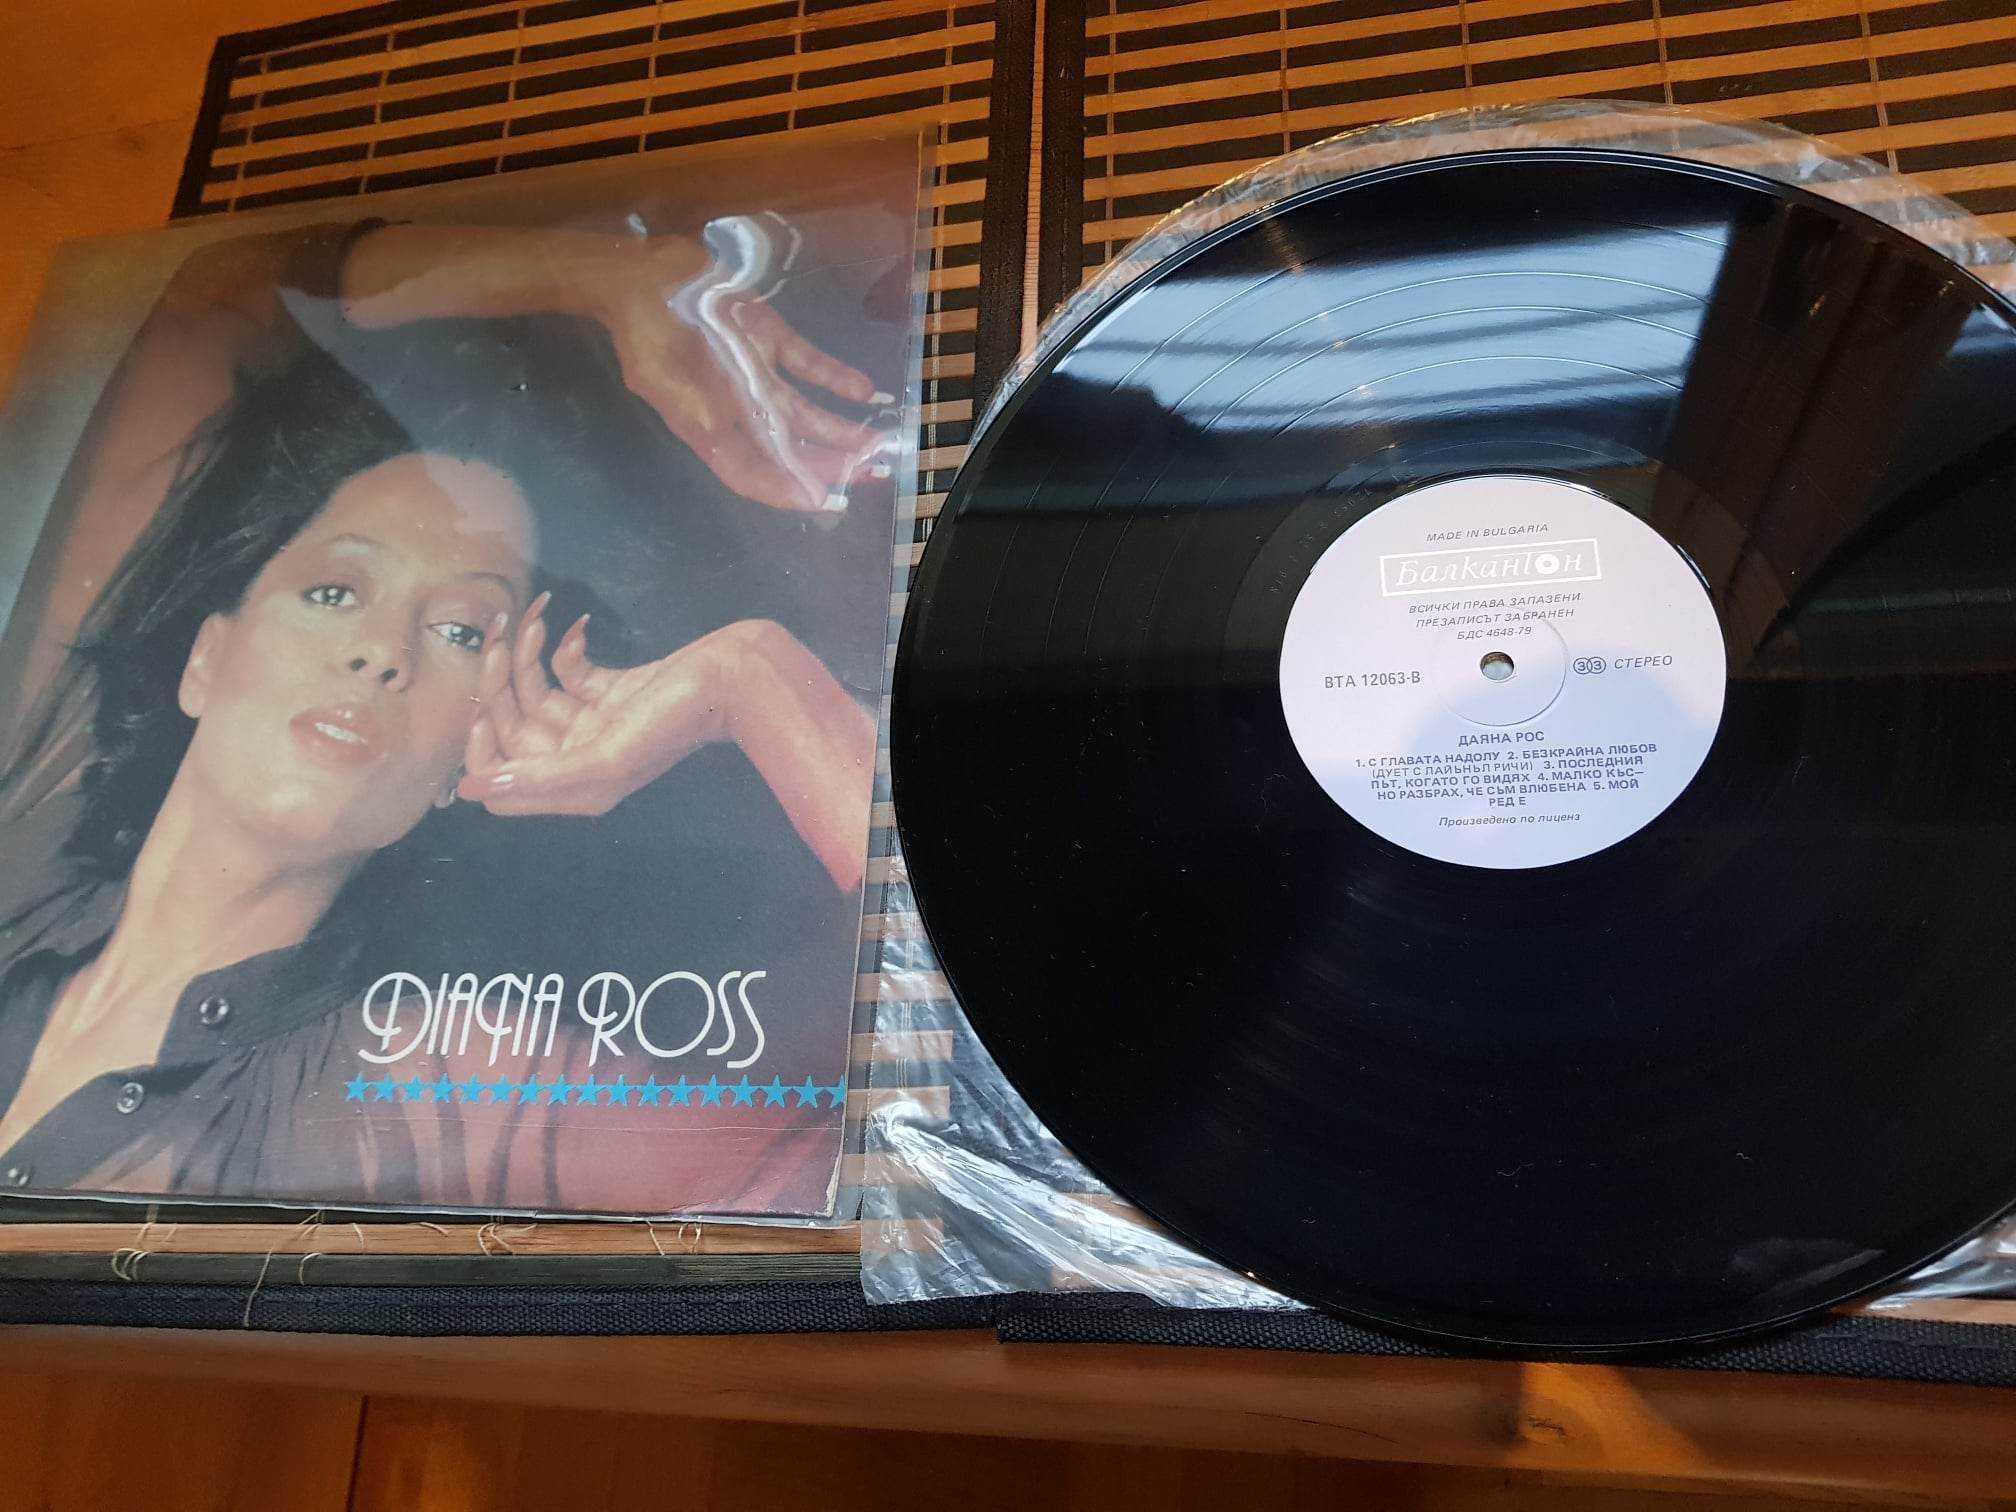 Płyta winylowa Diana Ross wydana w Bułgarii